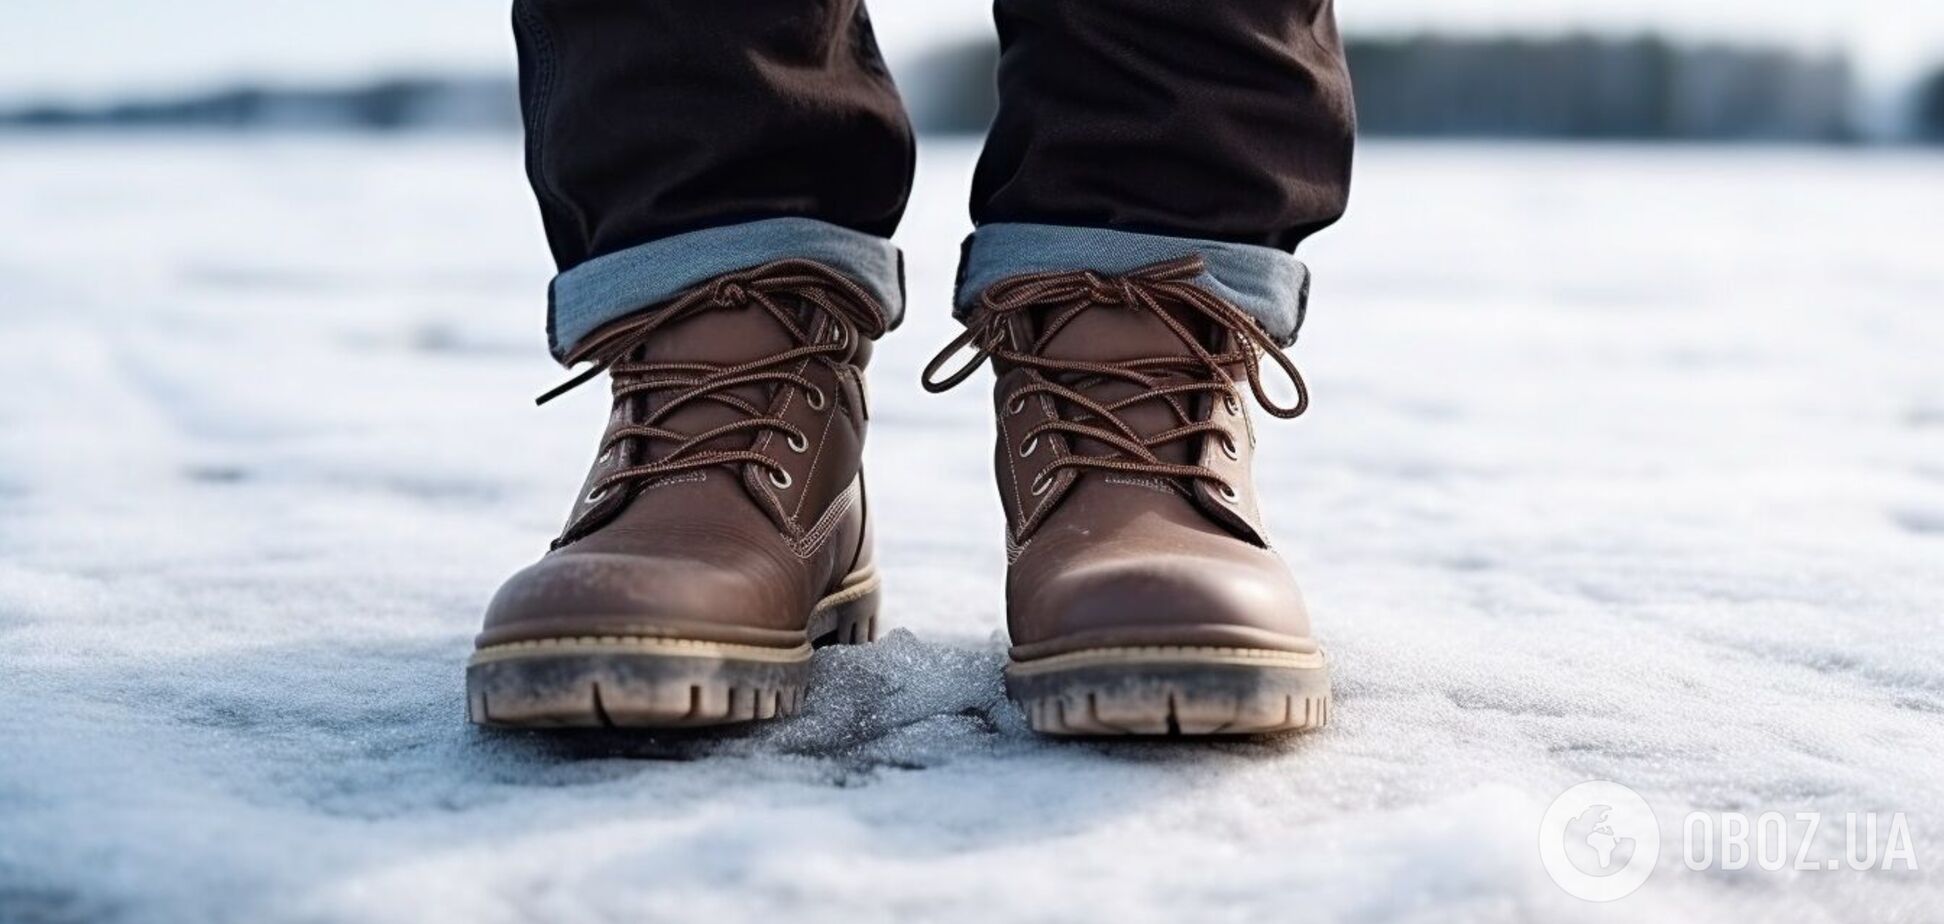 Как подготовить обувь к зиме, чтобы не была скользкой: лайфхаки